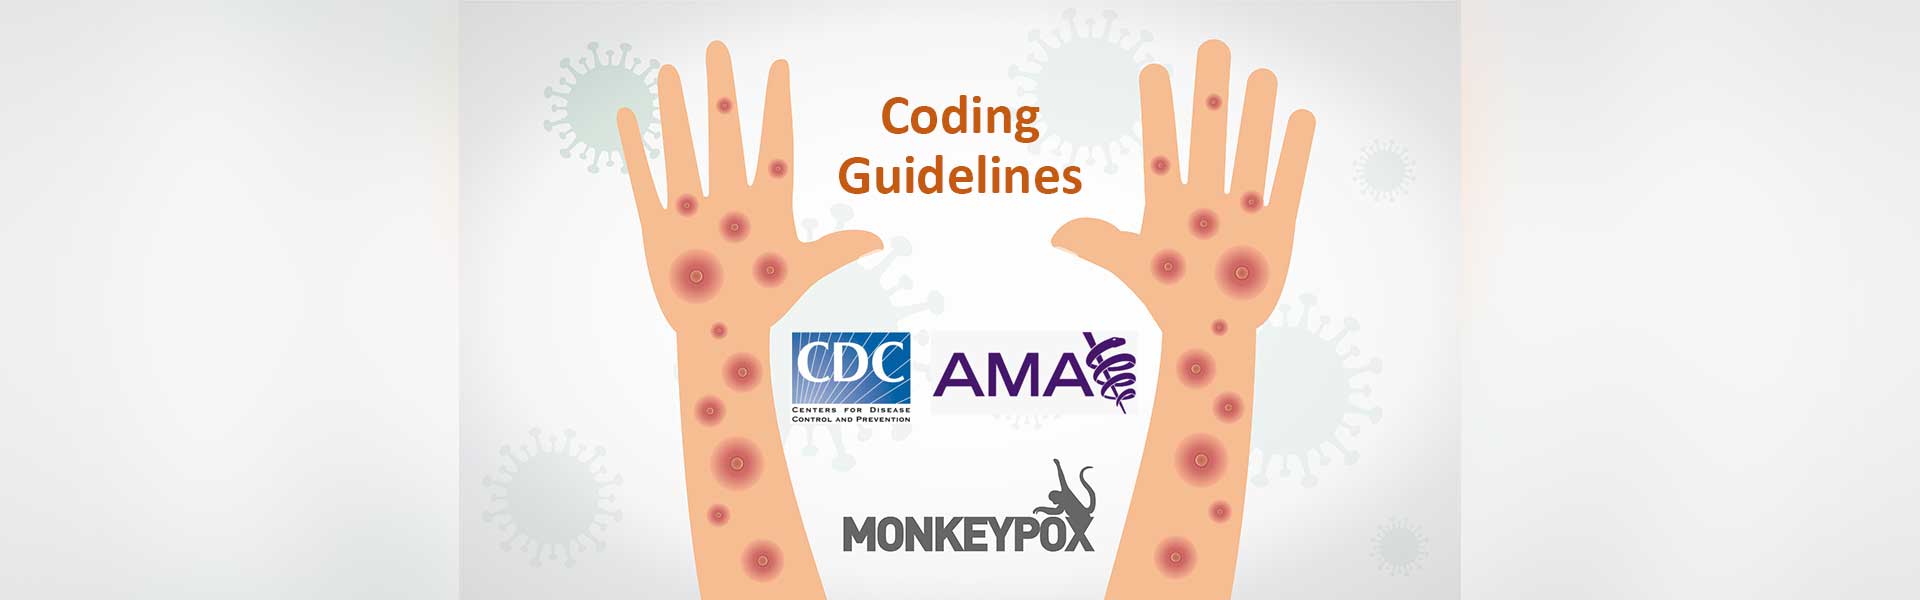 Coding Guidelines Monkeypox